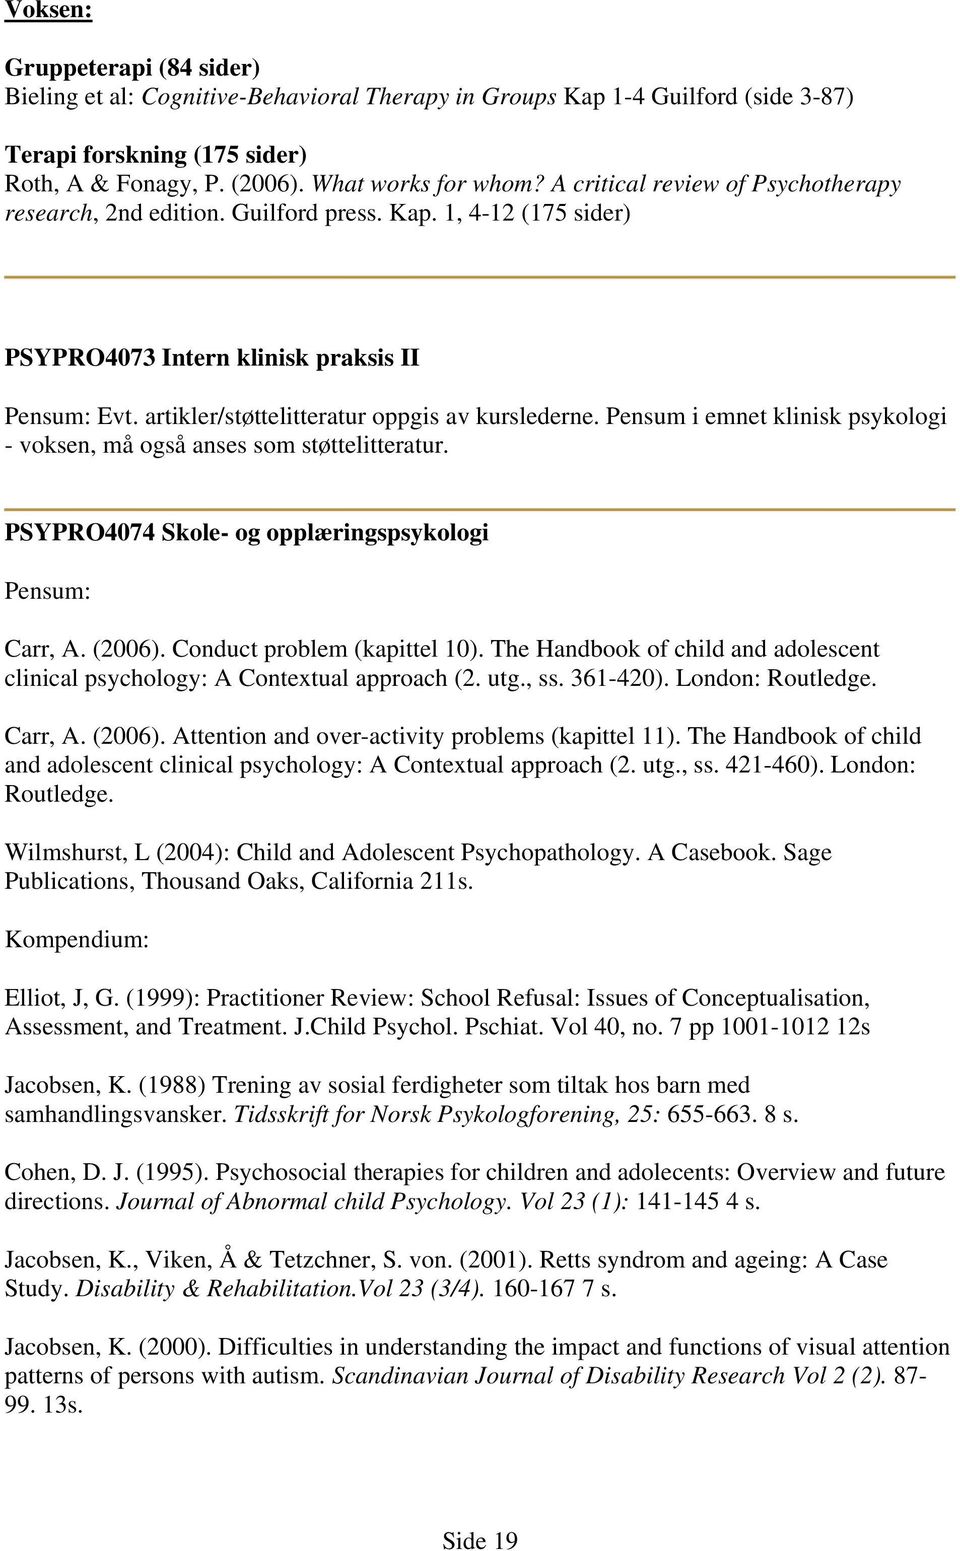 Pensum i emnet klinisk psykologi - voksen, må også anses som støttelitteratur. PSYPRO4074 Skole- og opplæringspsykologi Pensum: Carr, A. (2006). Conduct problem (kapittel 10).